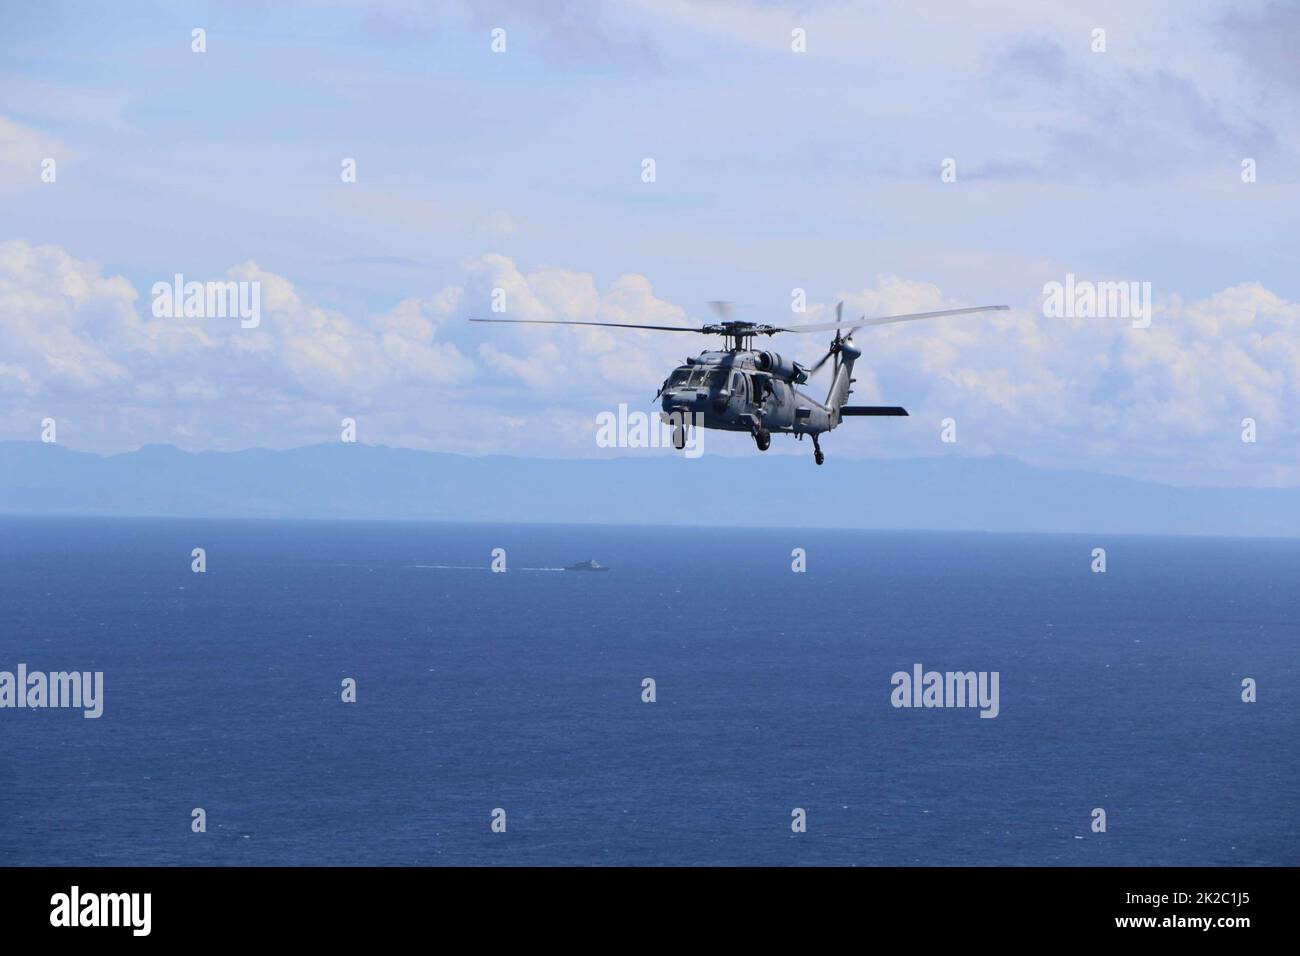 220910-N-N3764-3001 KARIBISCHES MEER - (SEPT 10, 2022) -- ein MH-60s Sea Hawk Hubschrauber, der dem Hubschrauber Sea Combat Squadron (HSC) 28, Ablösung 8, zugewiesen wurde, nimmt an einer Fotoübung mit Blick auf das Freedom-Variant Littoral Combat Ship USS Billings (LCS 15) im Karibischen Meer Teil, 10. September 2022. Billings wird in den Einsatzbereich der US-Flotte für 4. eingesetzt, um die Mission der Joint InterAgency Task Force South zu unterstützen, die Missionen zur Bekämpfung des illegalen Drogenhandels in der Karibik und im östlichen Pazifik umfasst. (USA Navy Foto/veröffentlicht) Stockfoto